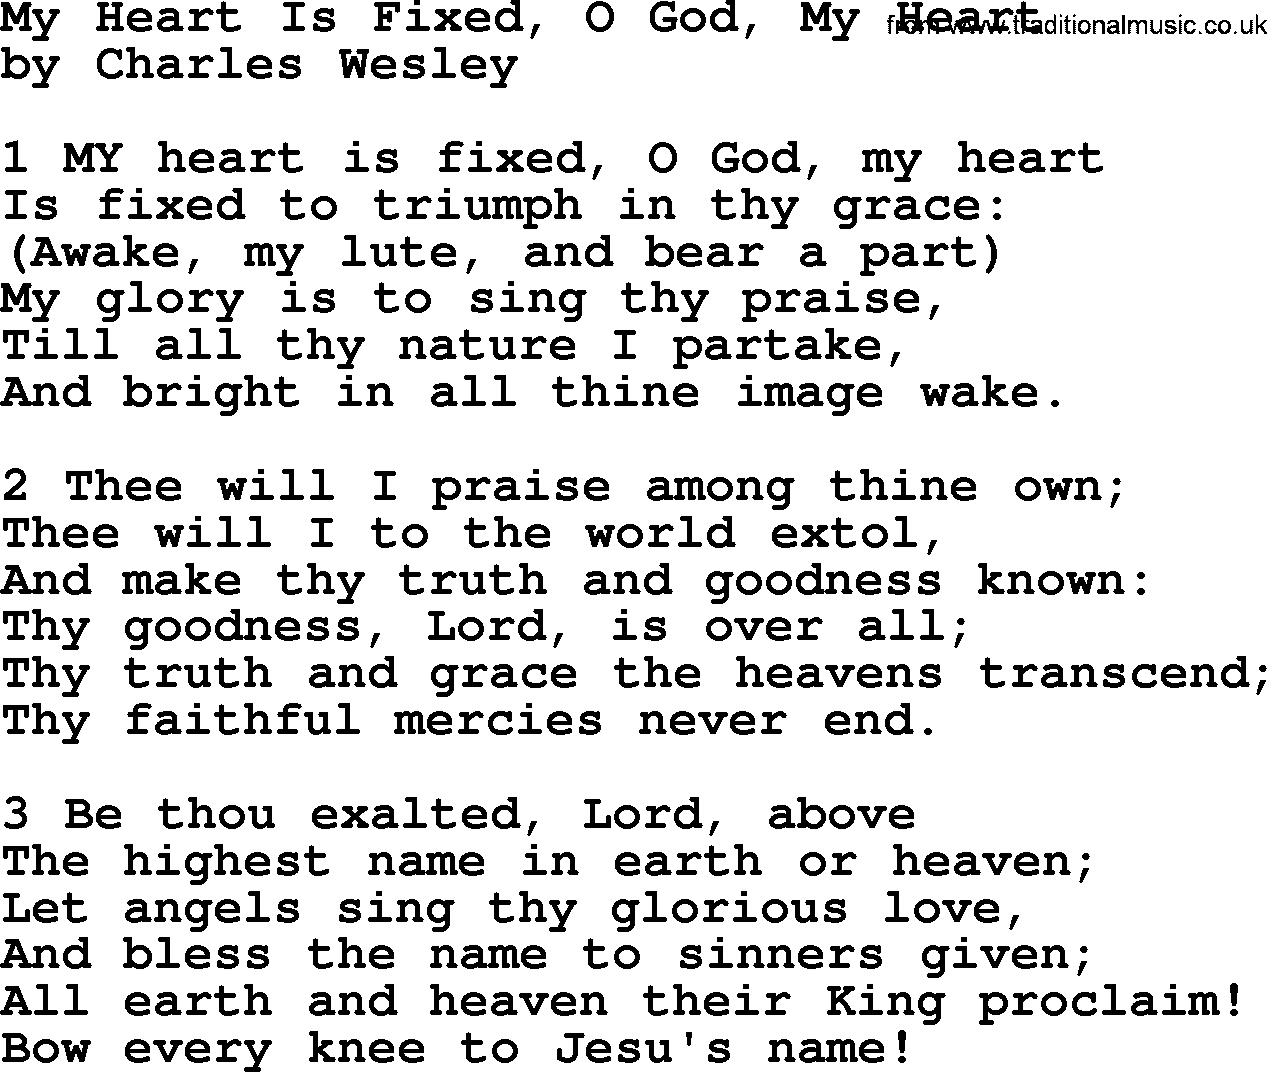 Charles Wesley hymn: My Heart Is Fixed, O God, My Heart, lyrics